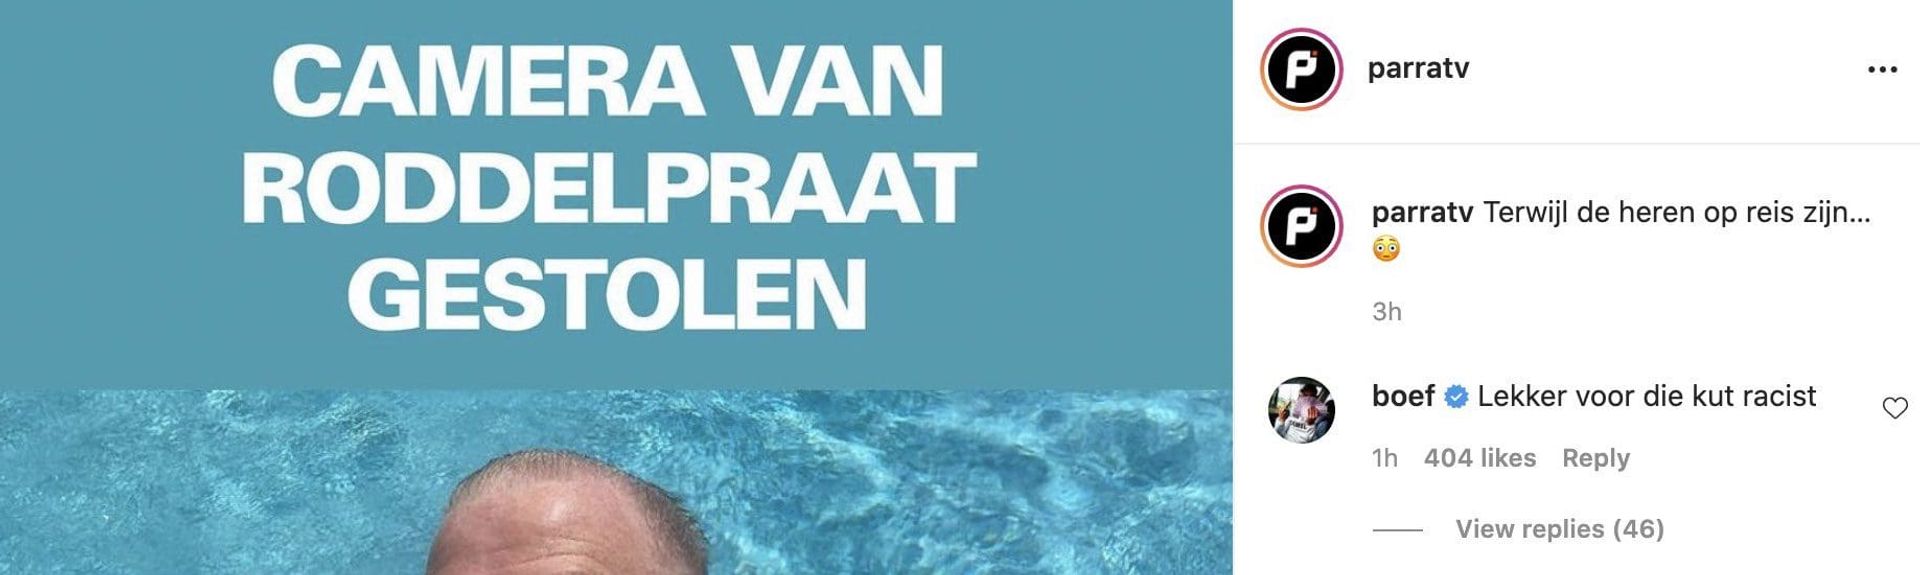 Rapper Boef: 'Jan Roos is k*t racist' roddelpraat-camera